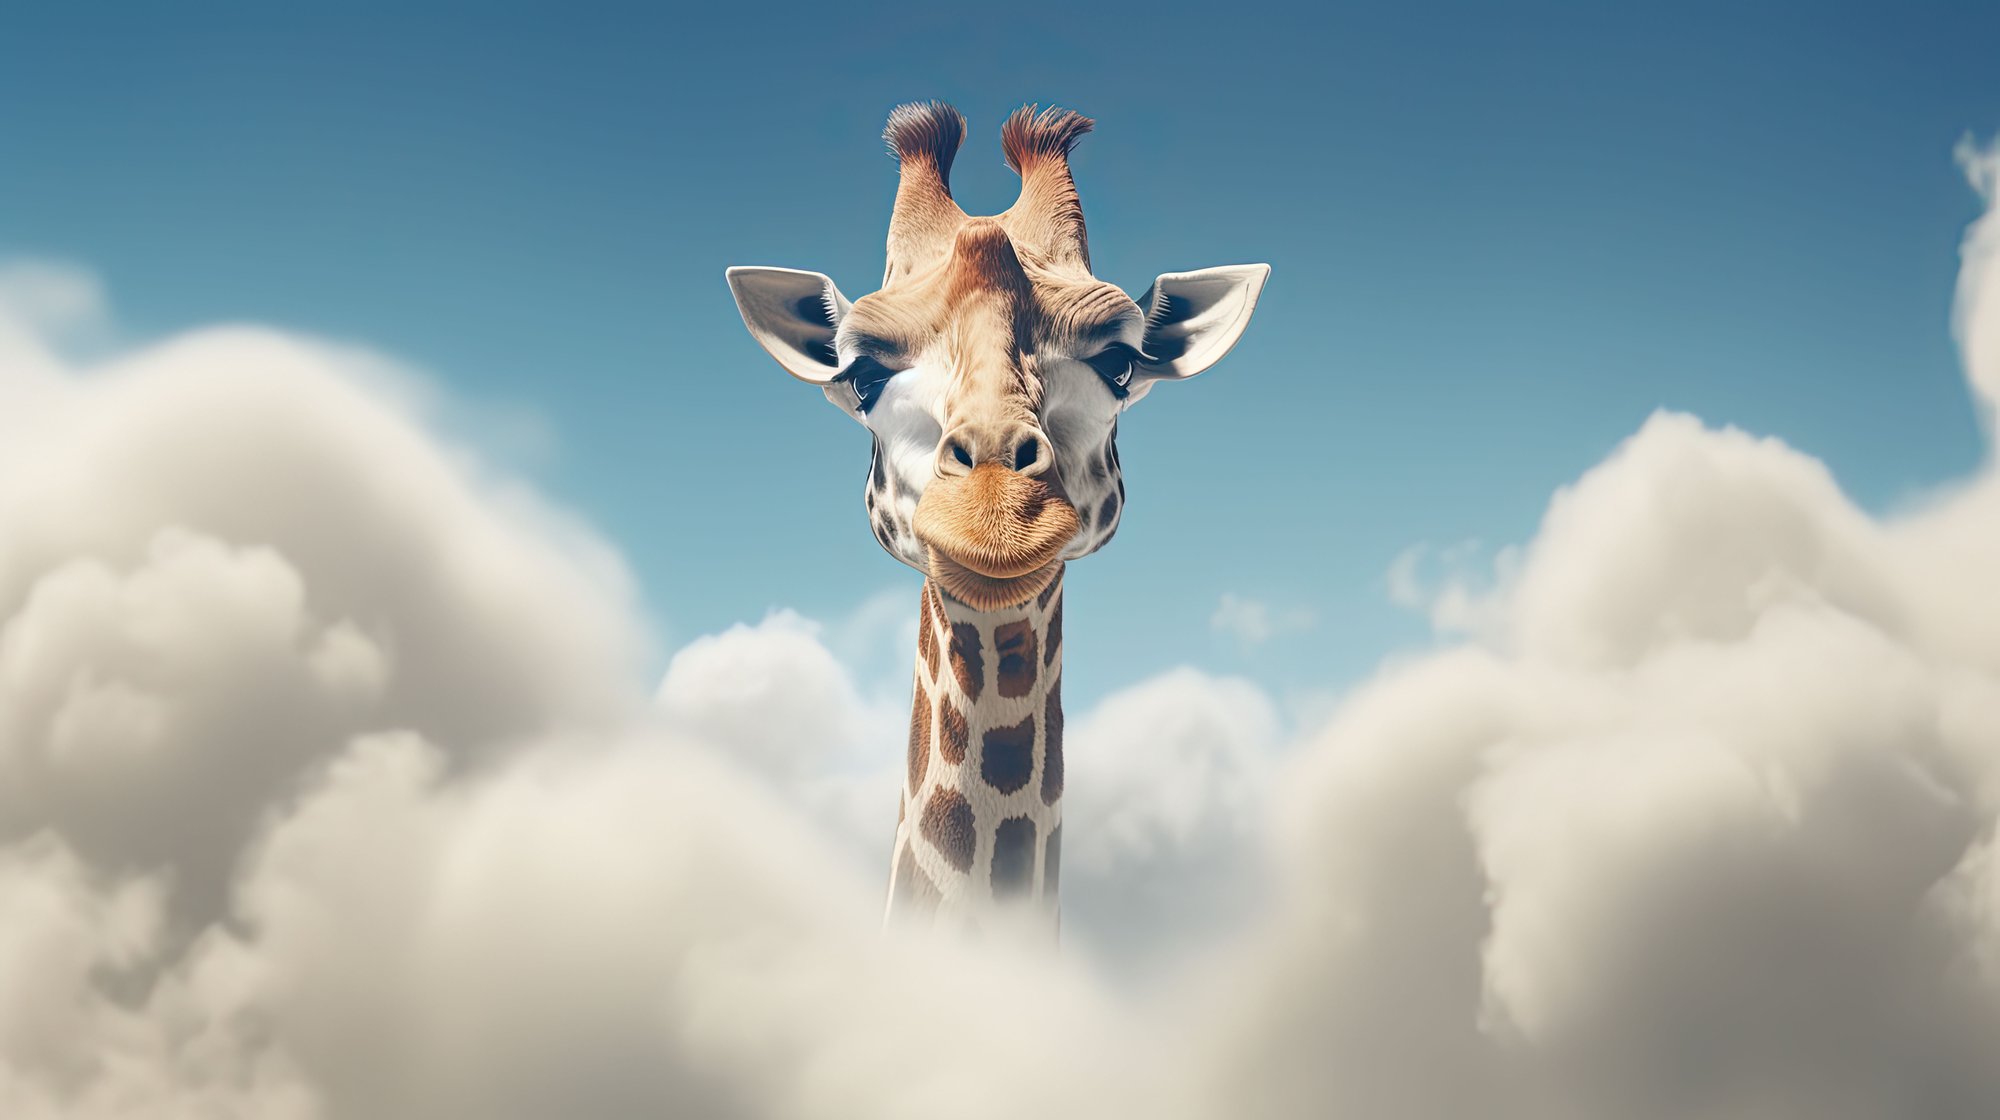 Cagemax campagne Dear to be great Giraffe komt boven de wolken uit